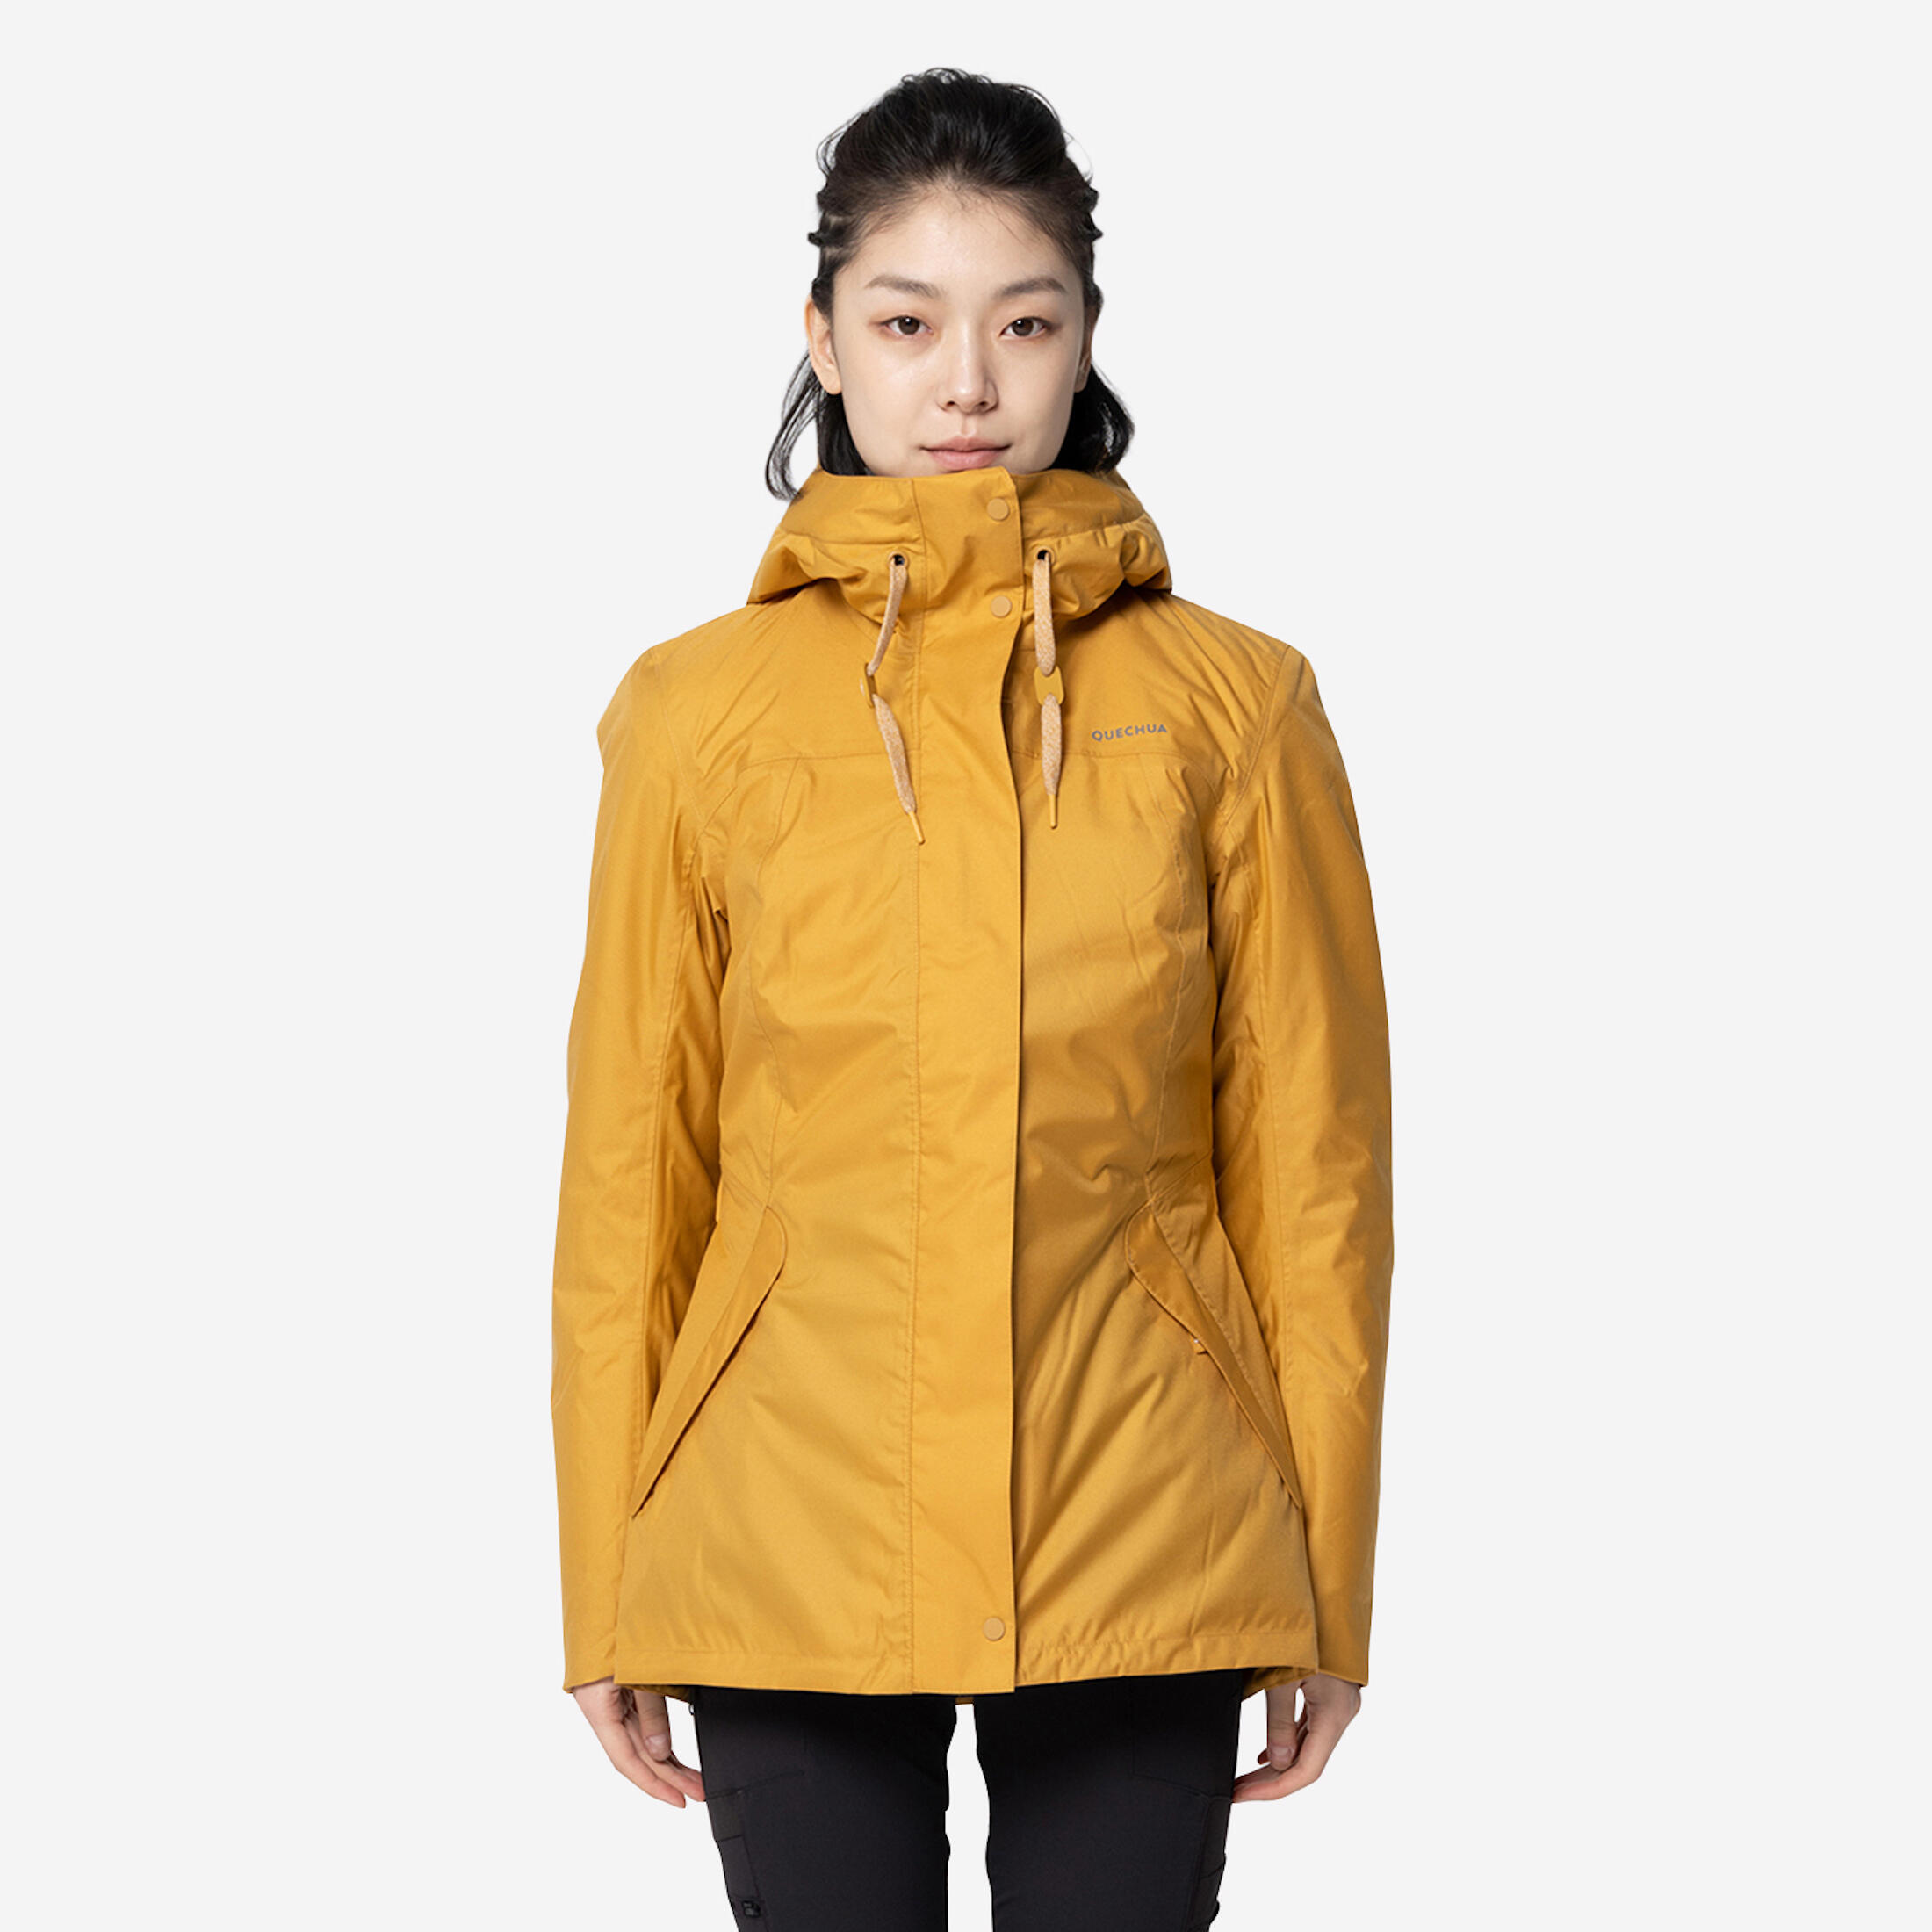 QUECHUA Women’s hiking waterproof winter jacket - SH500 -10°C